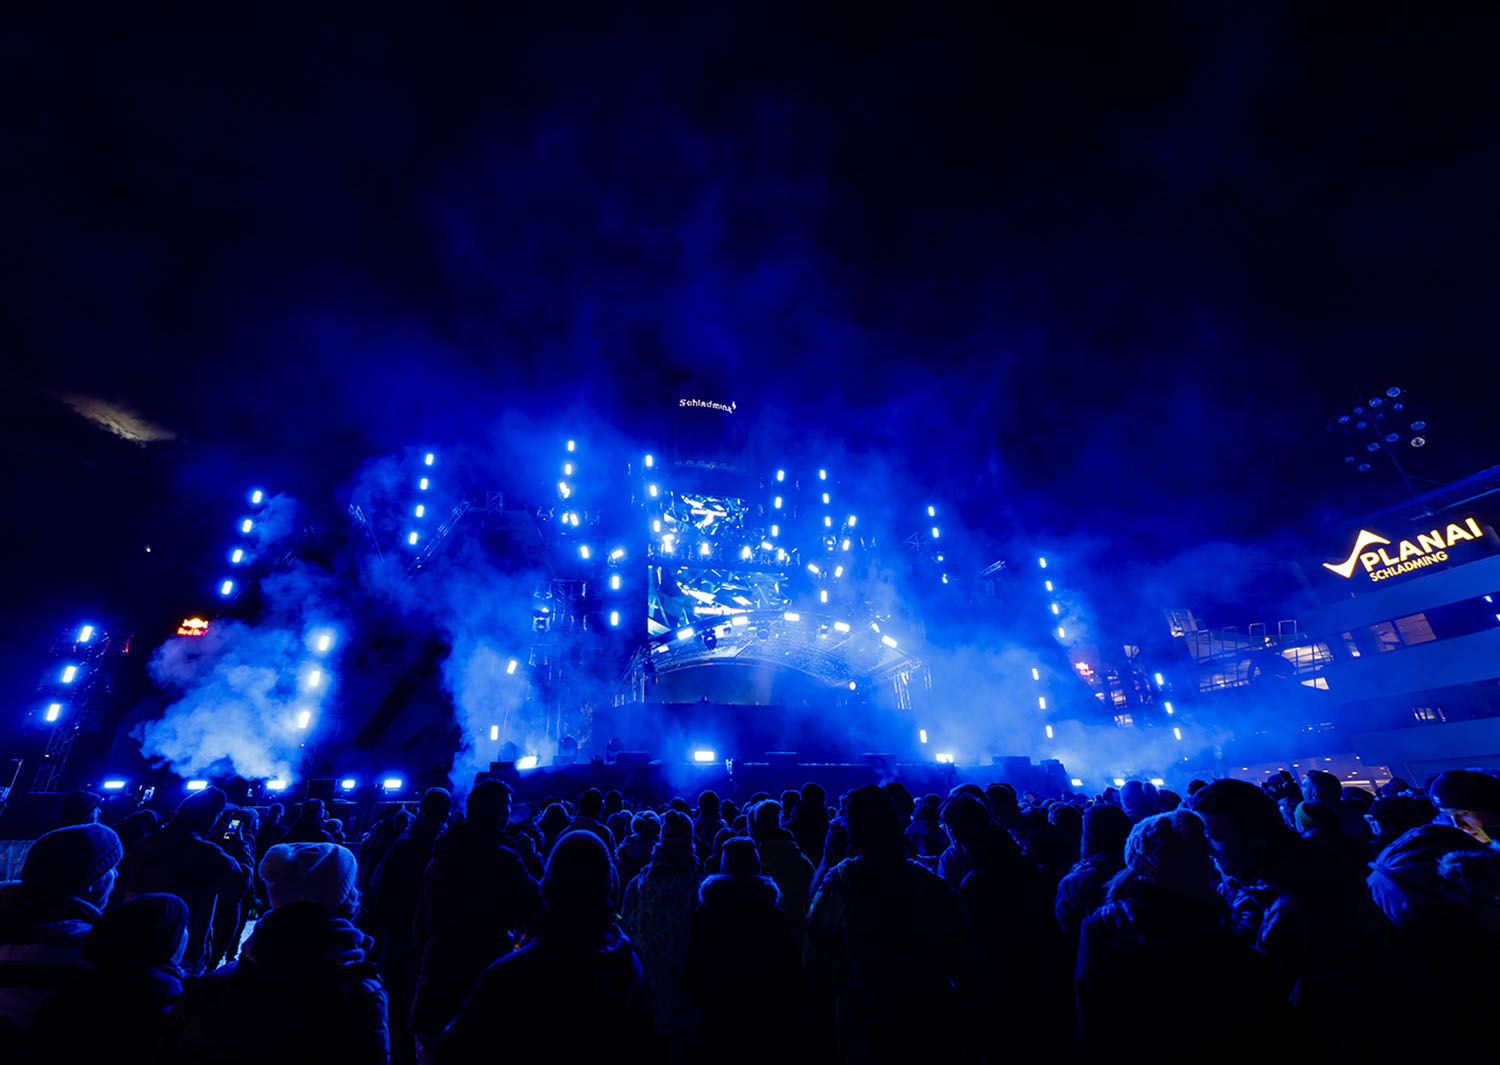 Stage in Blauem Licht mit Crowd beim Skiopening in Schladming